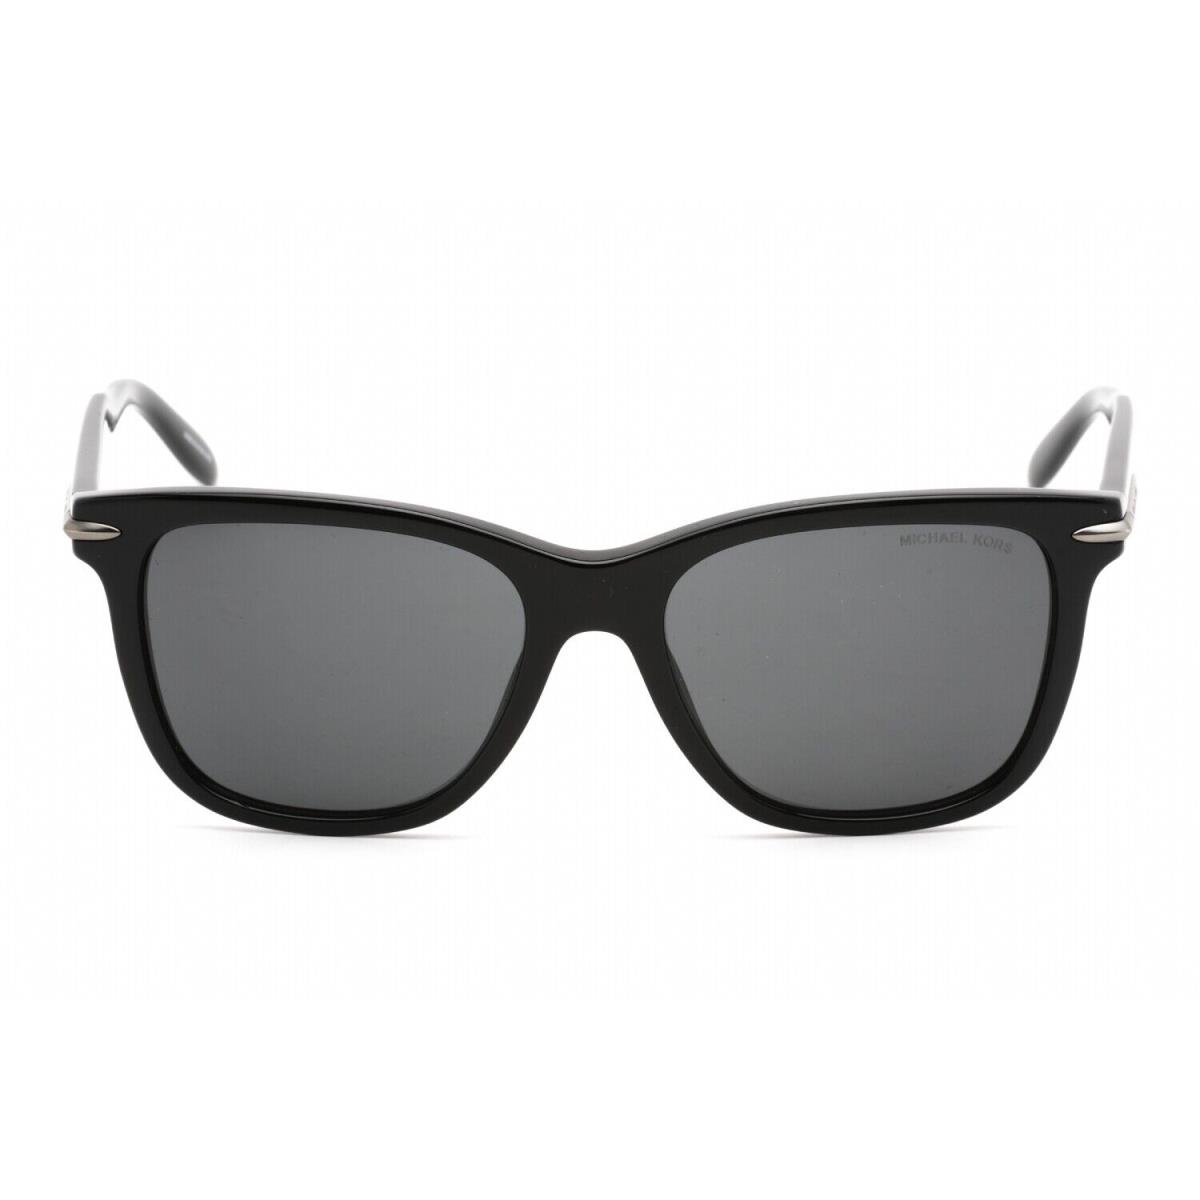 Michael Kors 0MK2178 300587 Sunglasses Black Frame Dark Grey Lenses 54 Mm